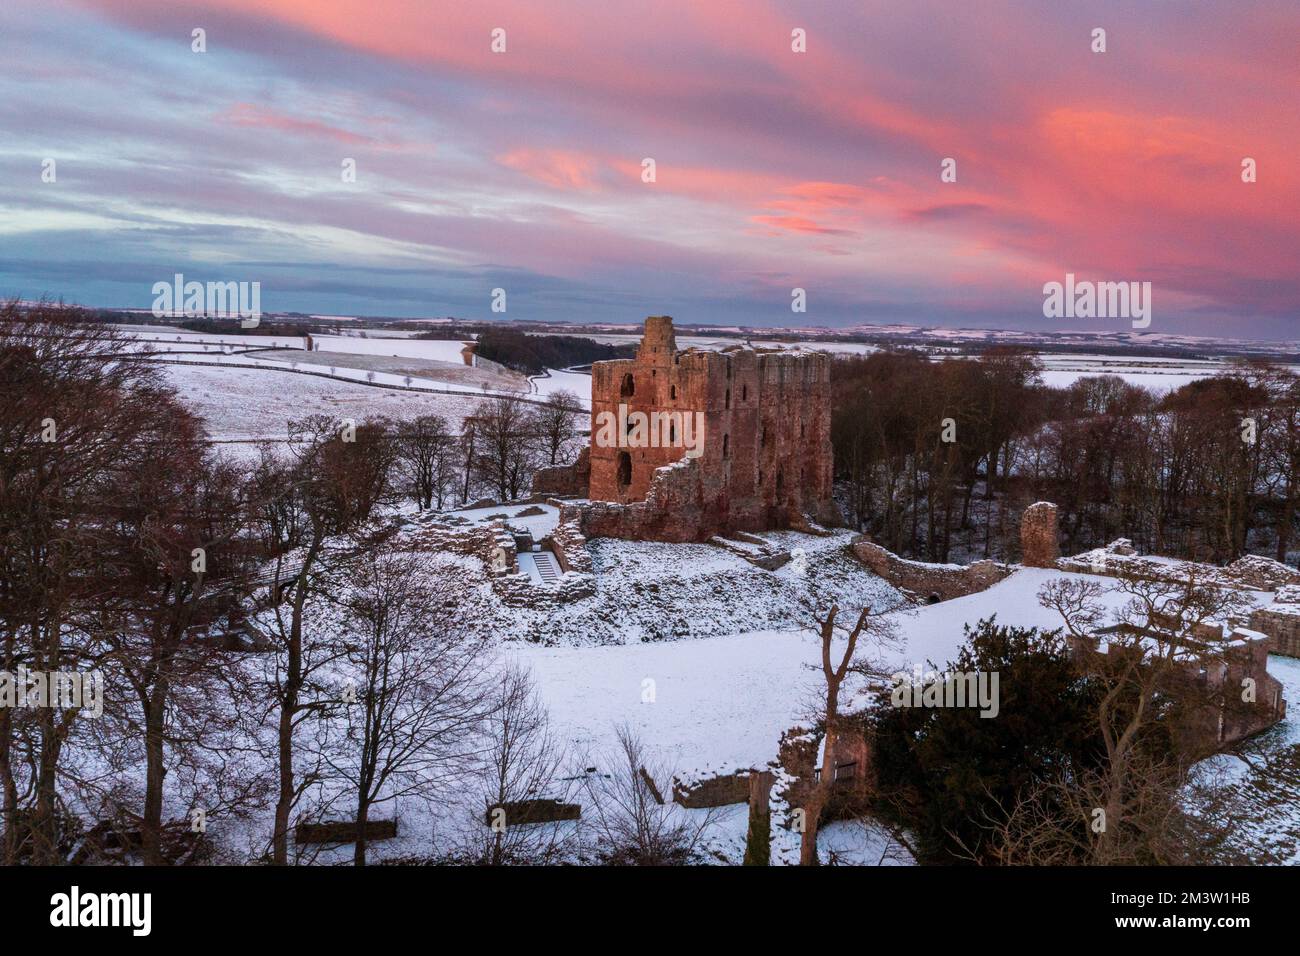 Le château de Norham gardait la frontière écossaise au-dessus de la rivière Tweed pendant les couchers de soleil sur un paysage d'hiver. Norham, Northumberland, Angleterre, Royaume-Uni Banque D'Images